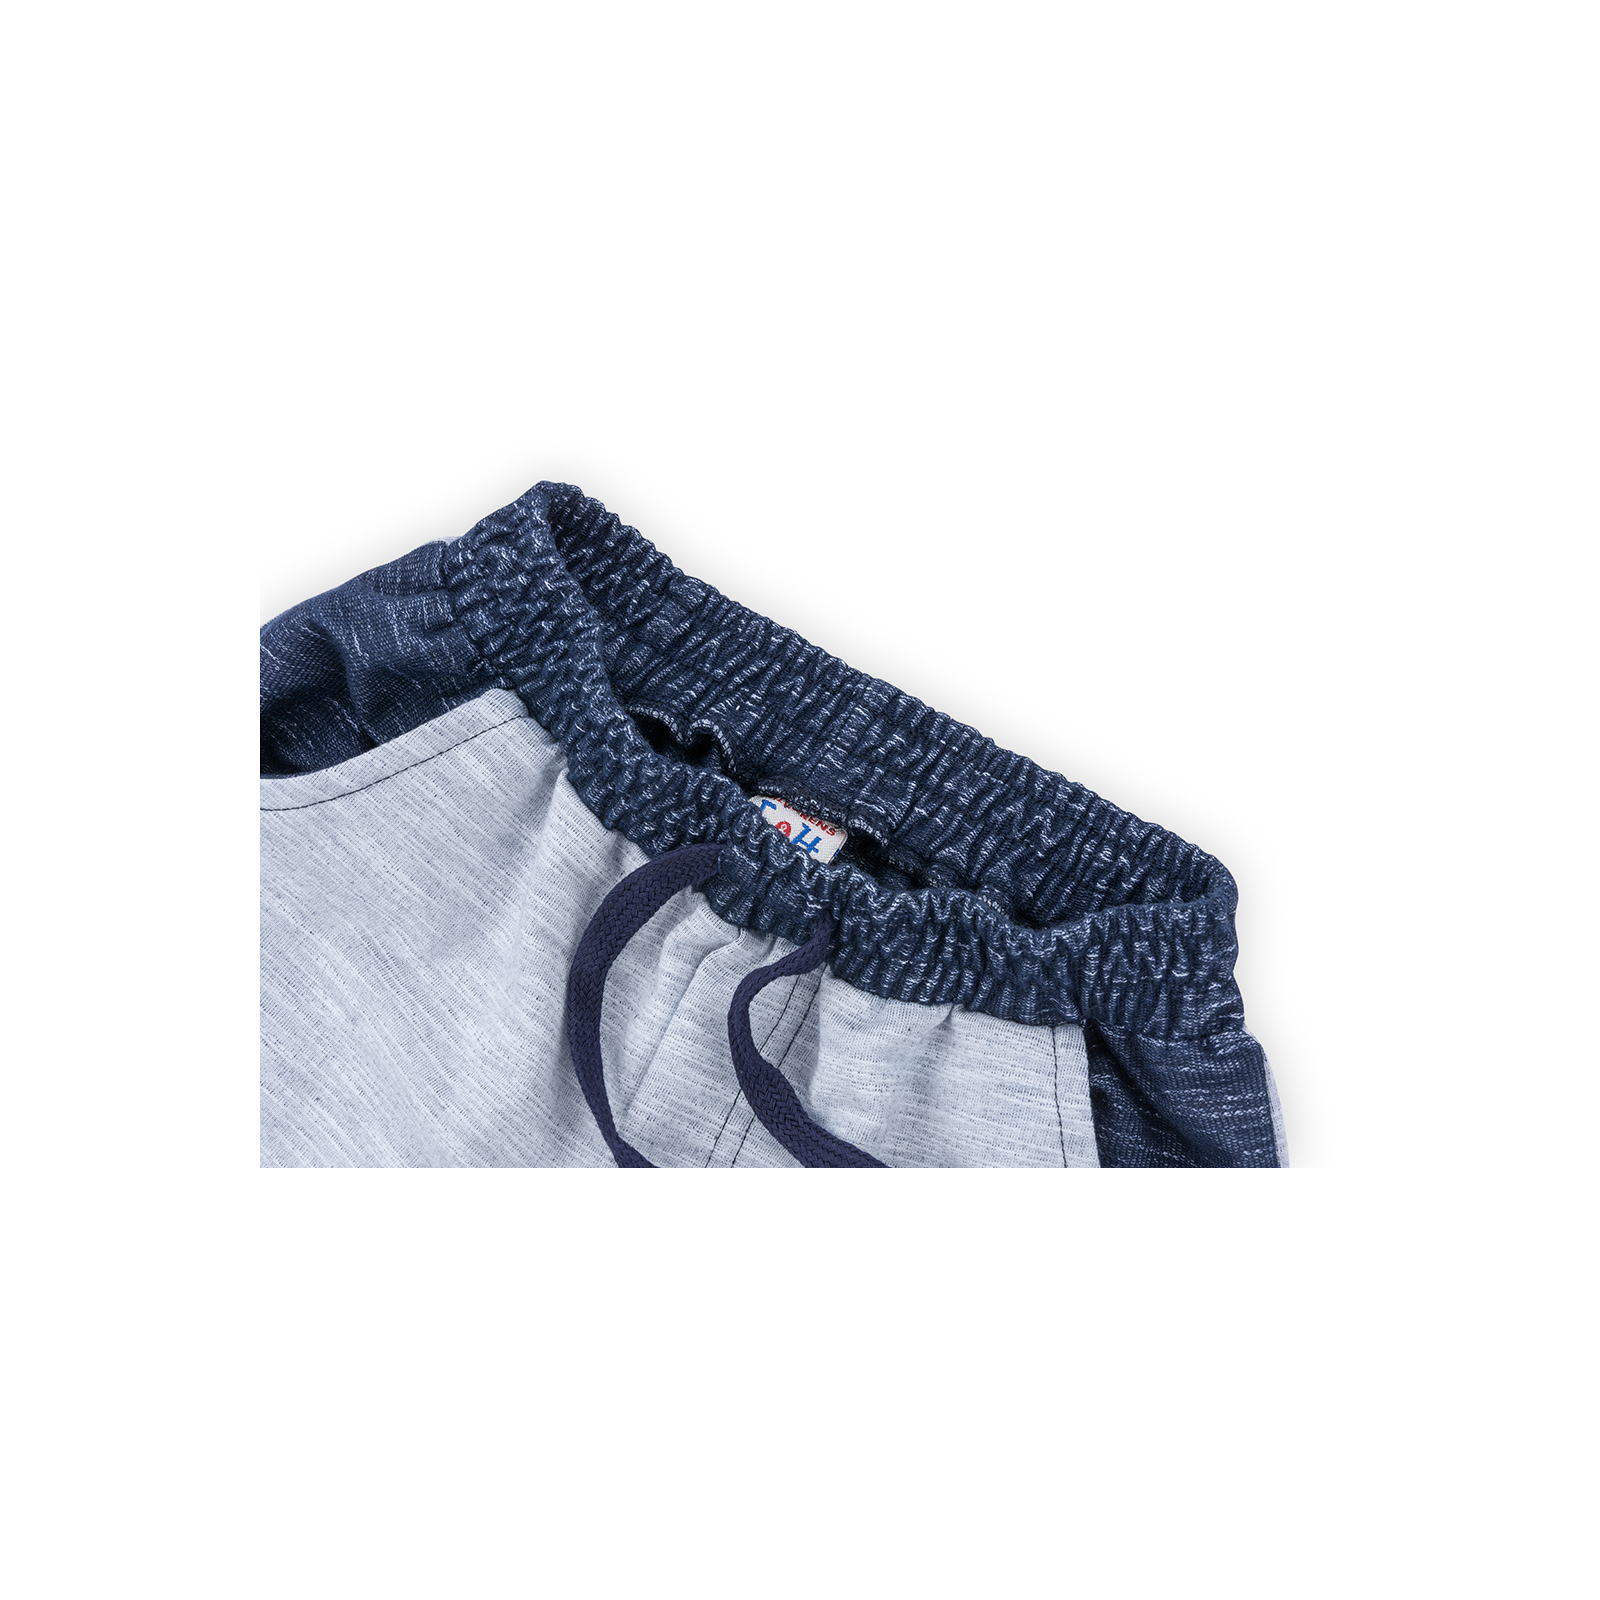 Набор детской одежды Breeze футболка "Brooklyn ATH" с шортами (8932-116B-white) изображение 7